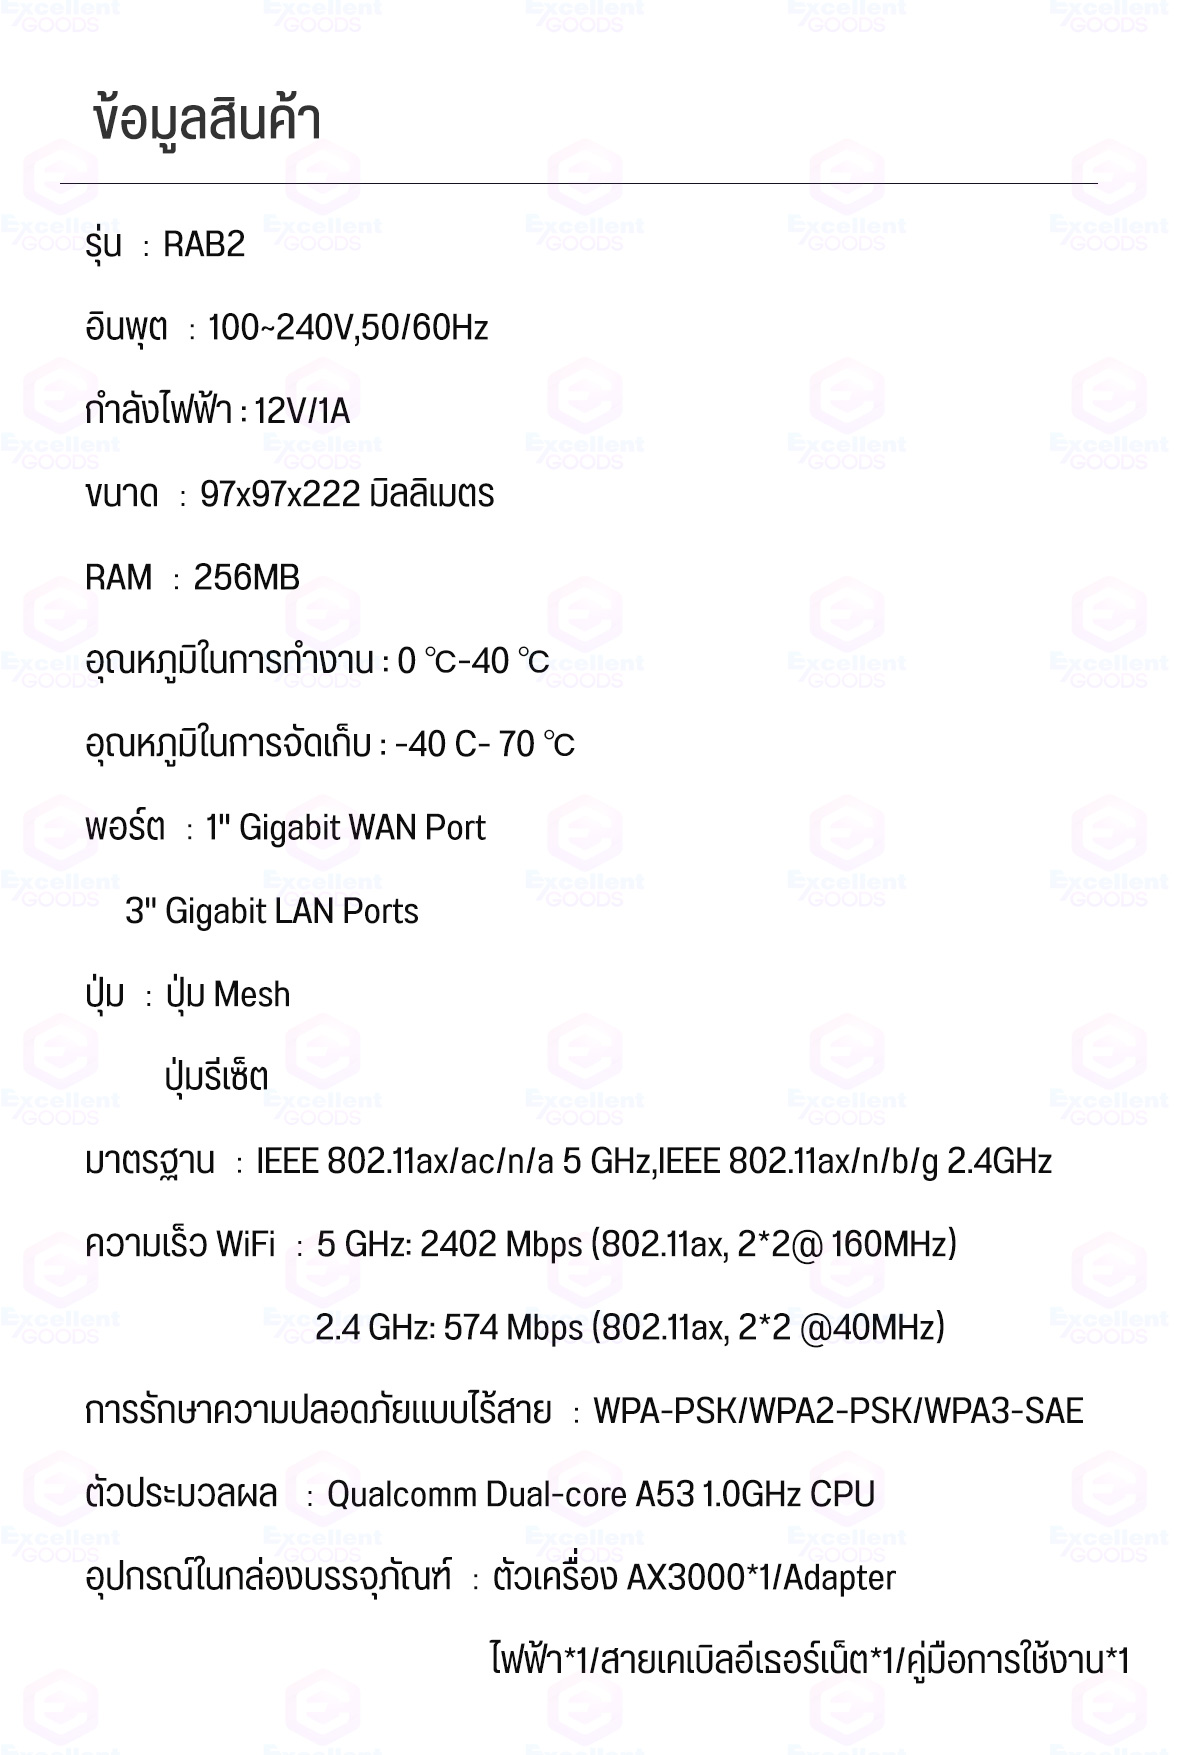 รูปภาพรายละเอียดของ Xiaomi Mi Router AX3000 / Mesh System AX3000 (เราเตอร์คู่) AIoT WiFi6 IoT 5G เราเตอร์รับสัญญาณ Wi-Fi 6 เชื่อมต่อแอพ เร้าเตอร์ไวไฟ เราเตอร์ wifi การกำหนดค่าเครือข่ายทำได้ง่ายและรวดเร็ว อีกทั้งรองรับการควบคุมอัจฉริยะผ่าน Mi Home App